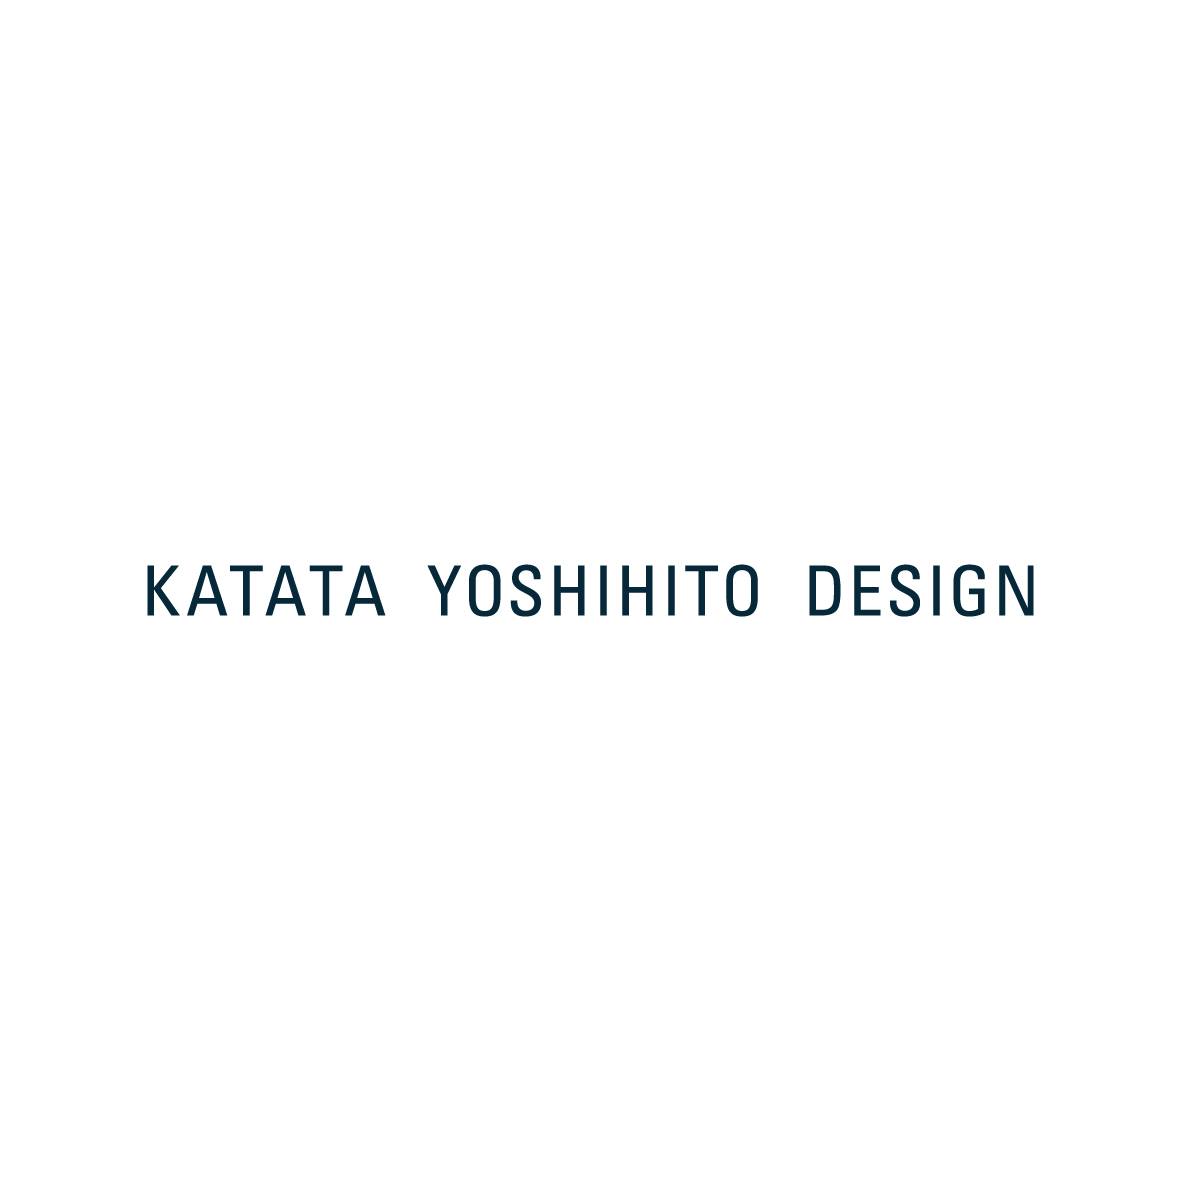 KATATA YOSHIHITO DESIGN